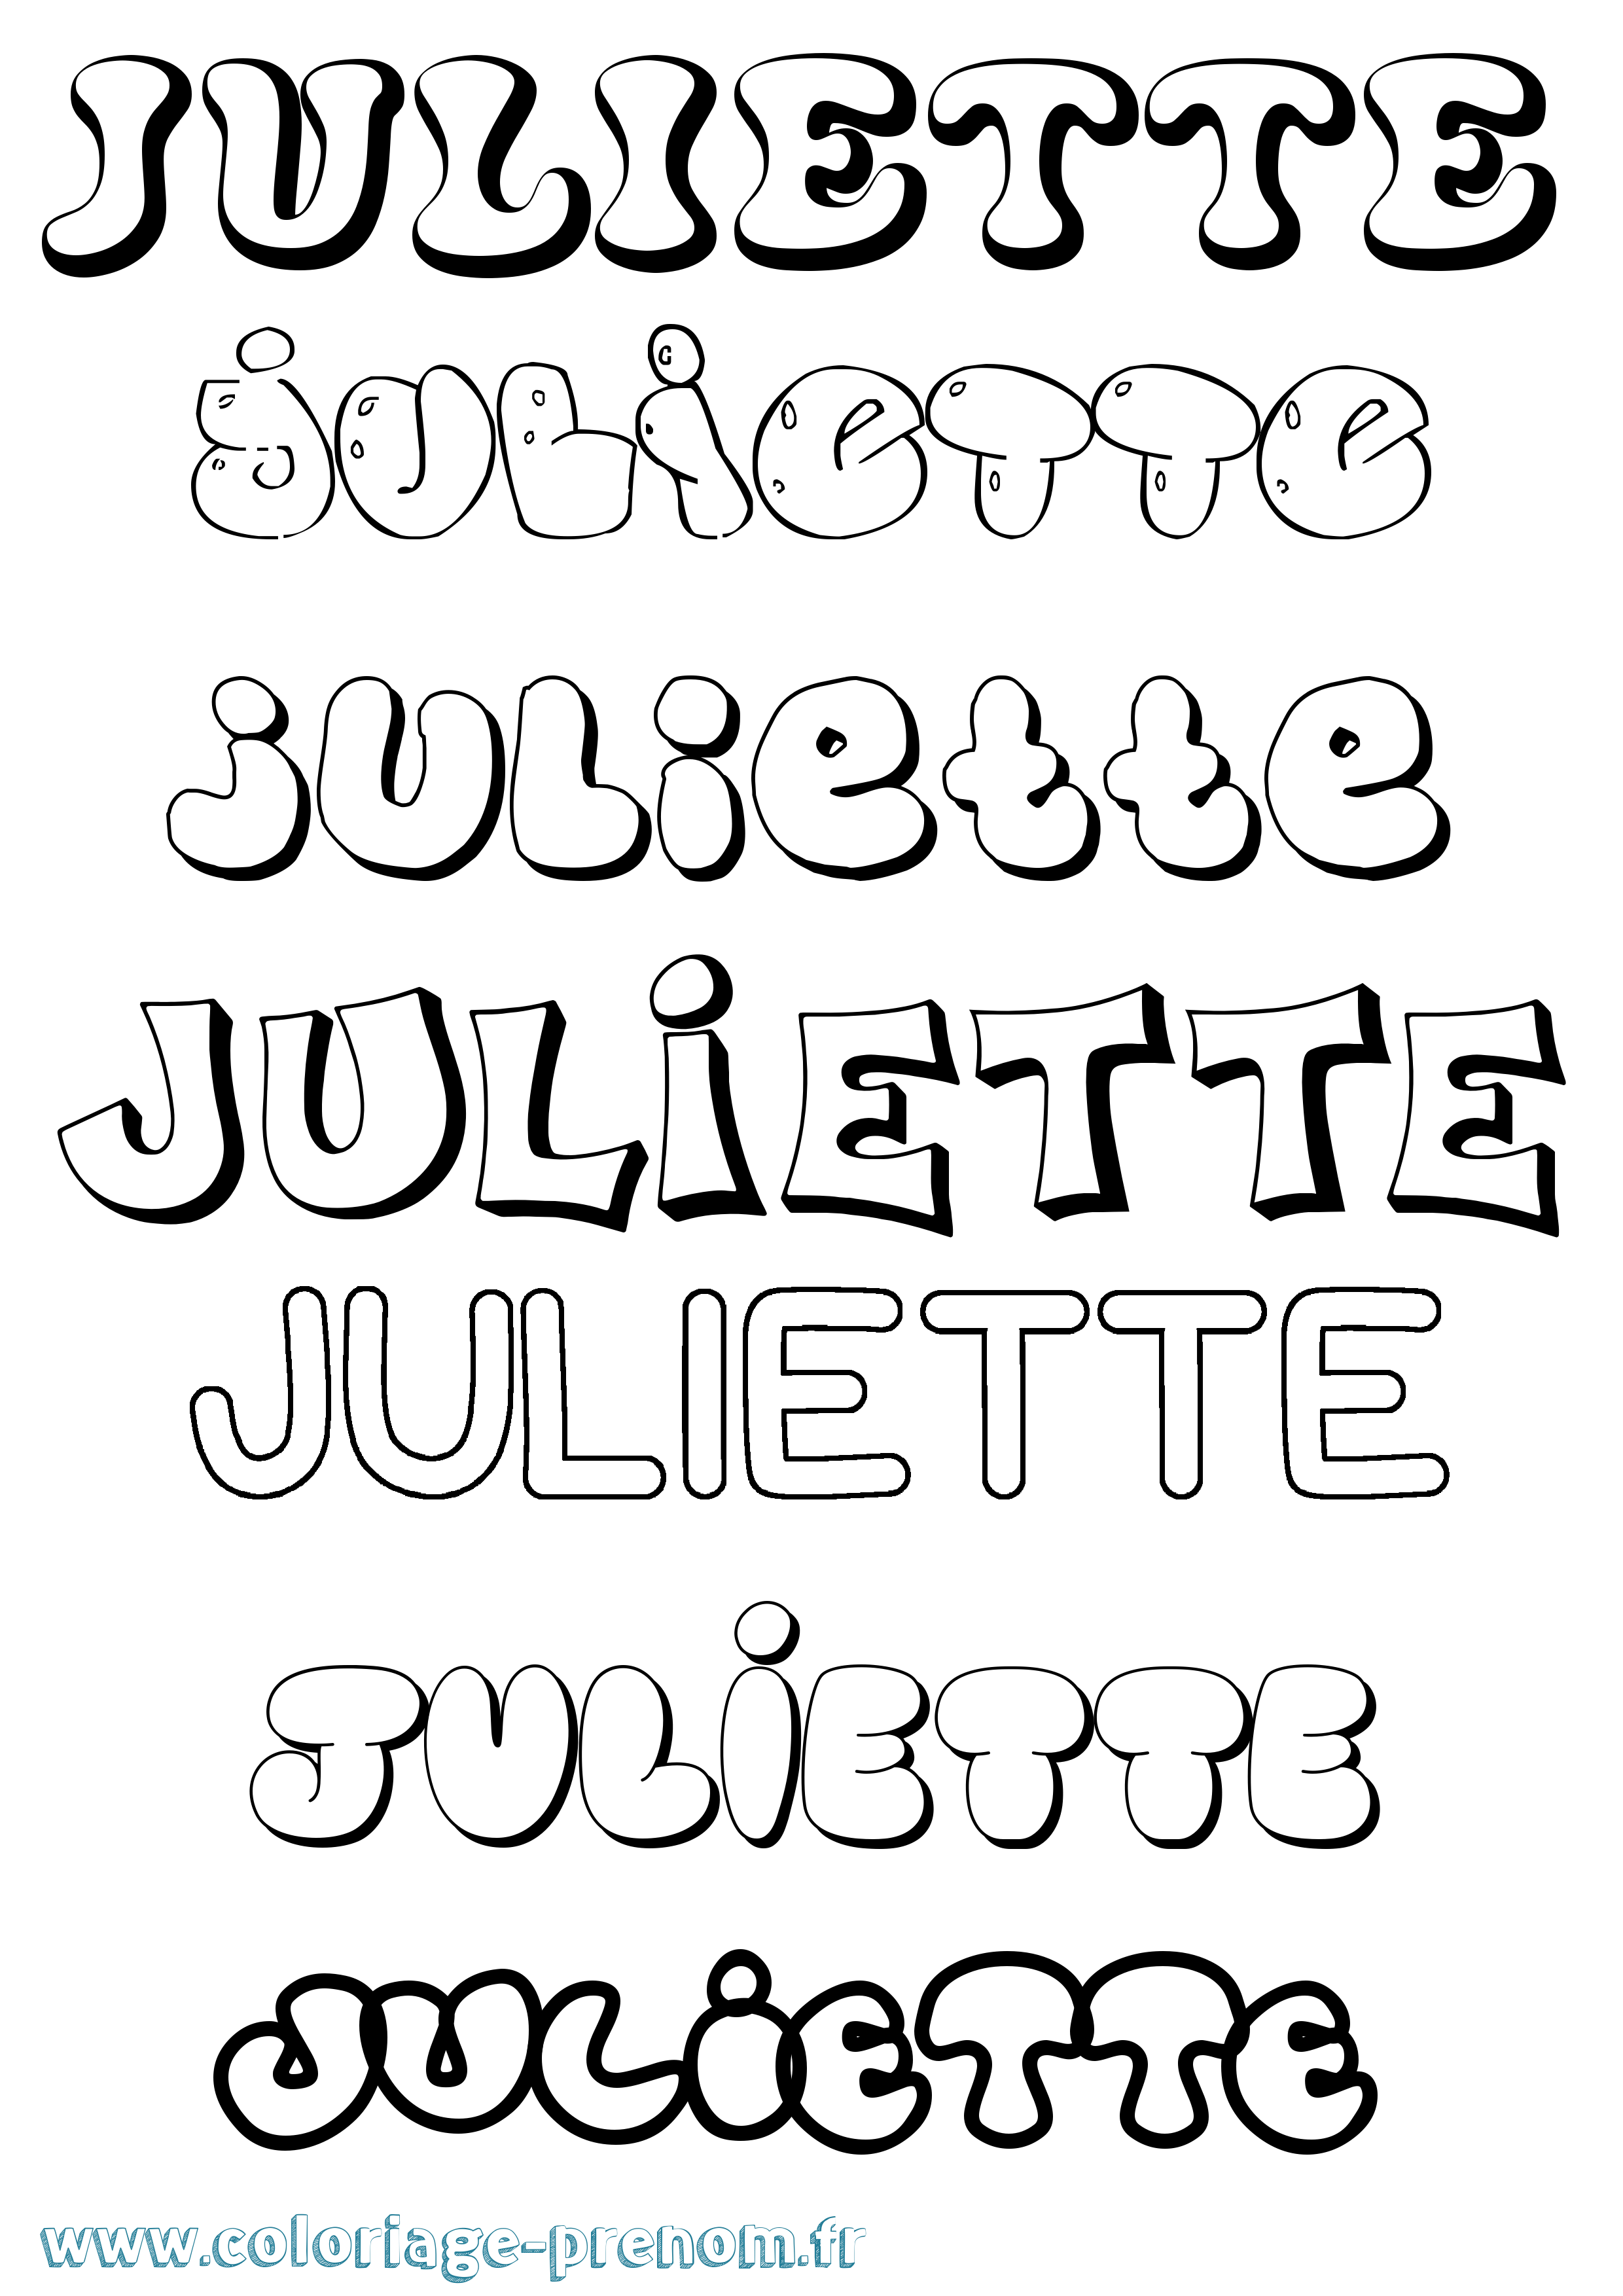 Coloriage prénom Juliette Bubble